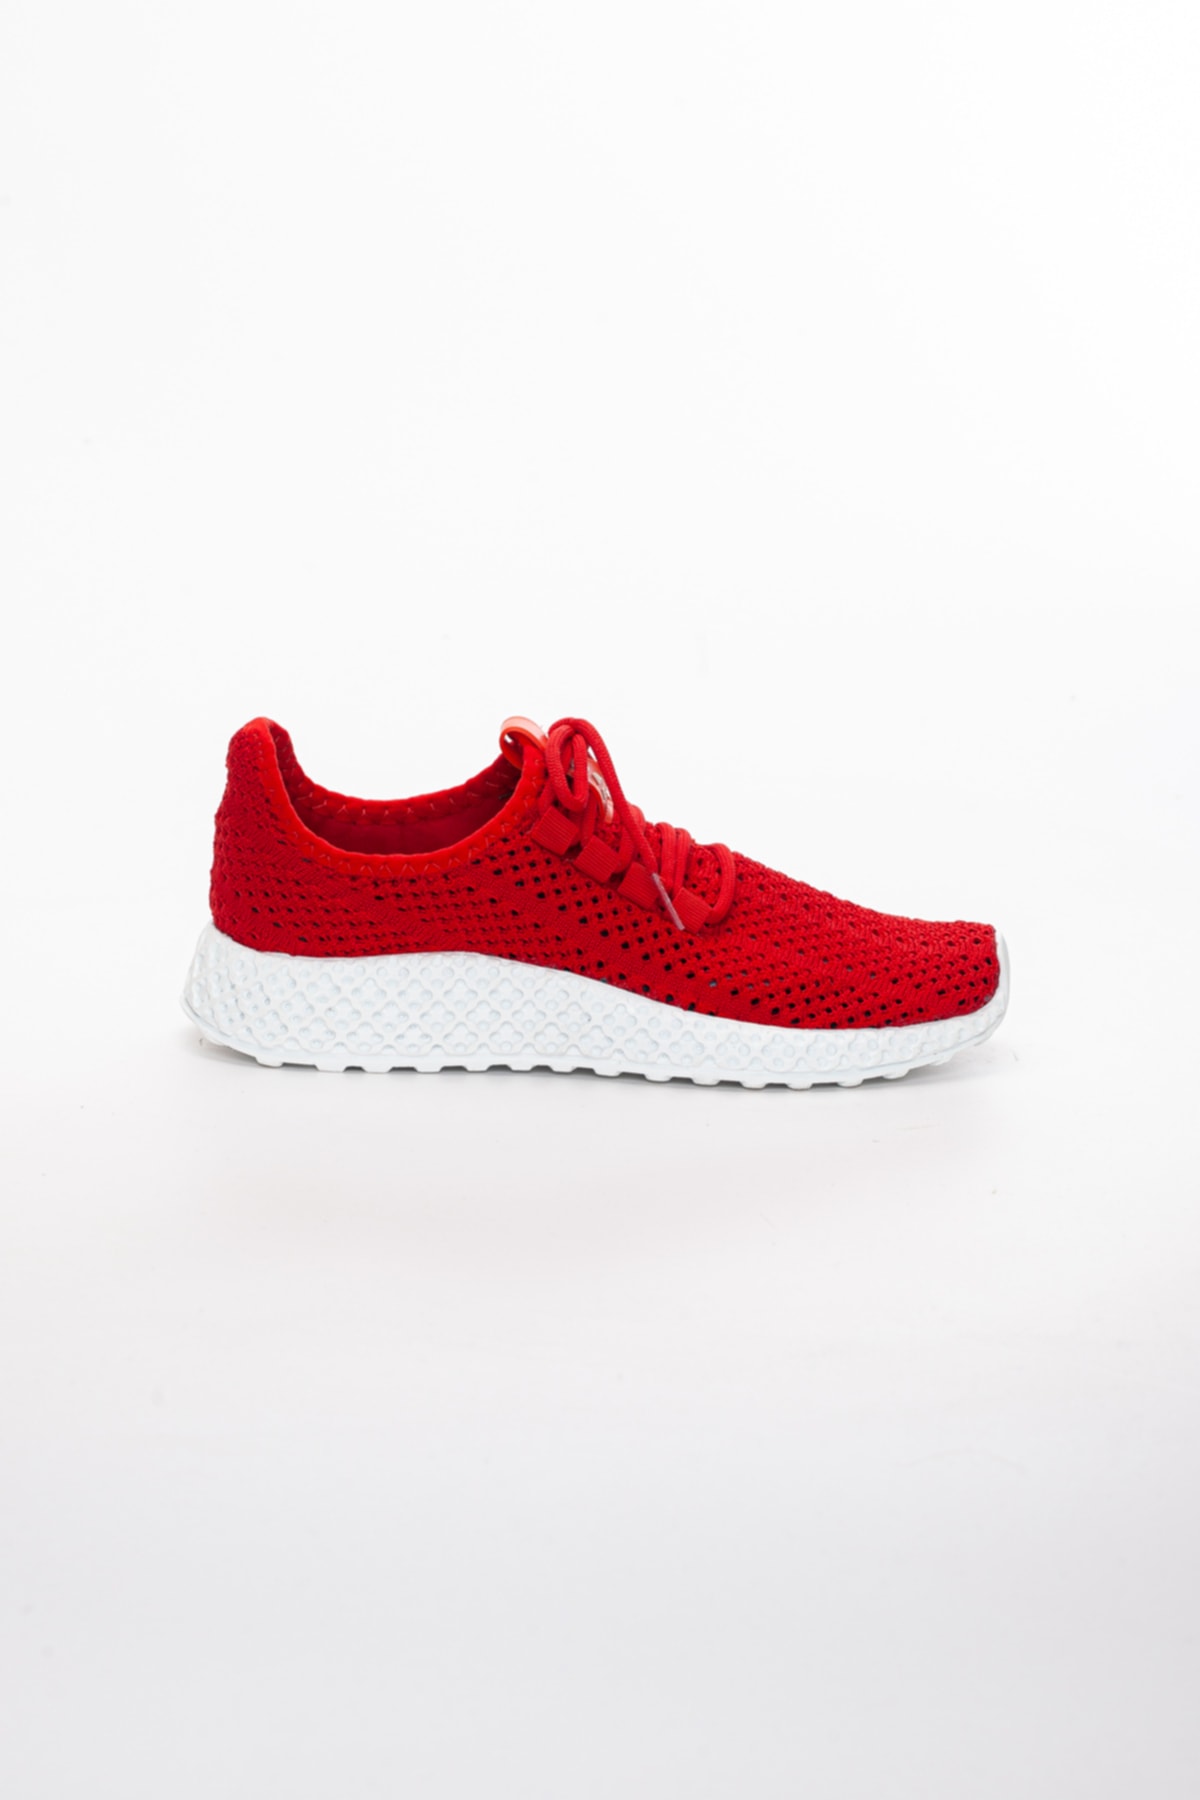 Odal Shoes Unisex Kırmızı Örme Triko Spor Ayakkabı Örmşms1174